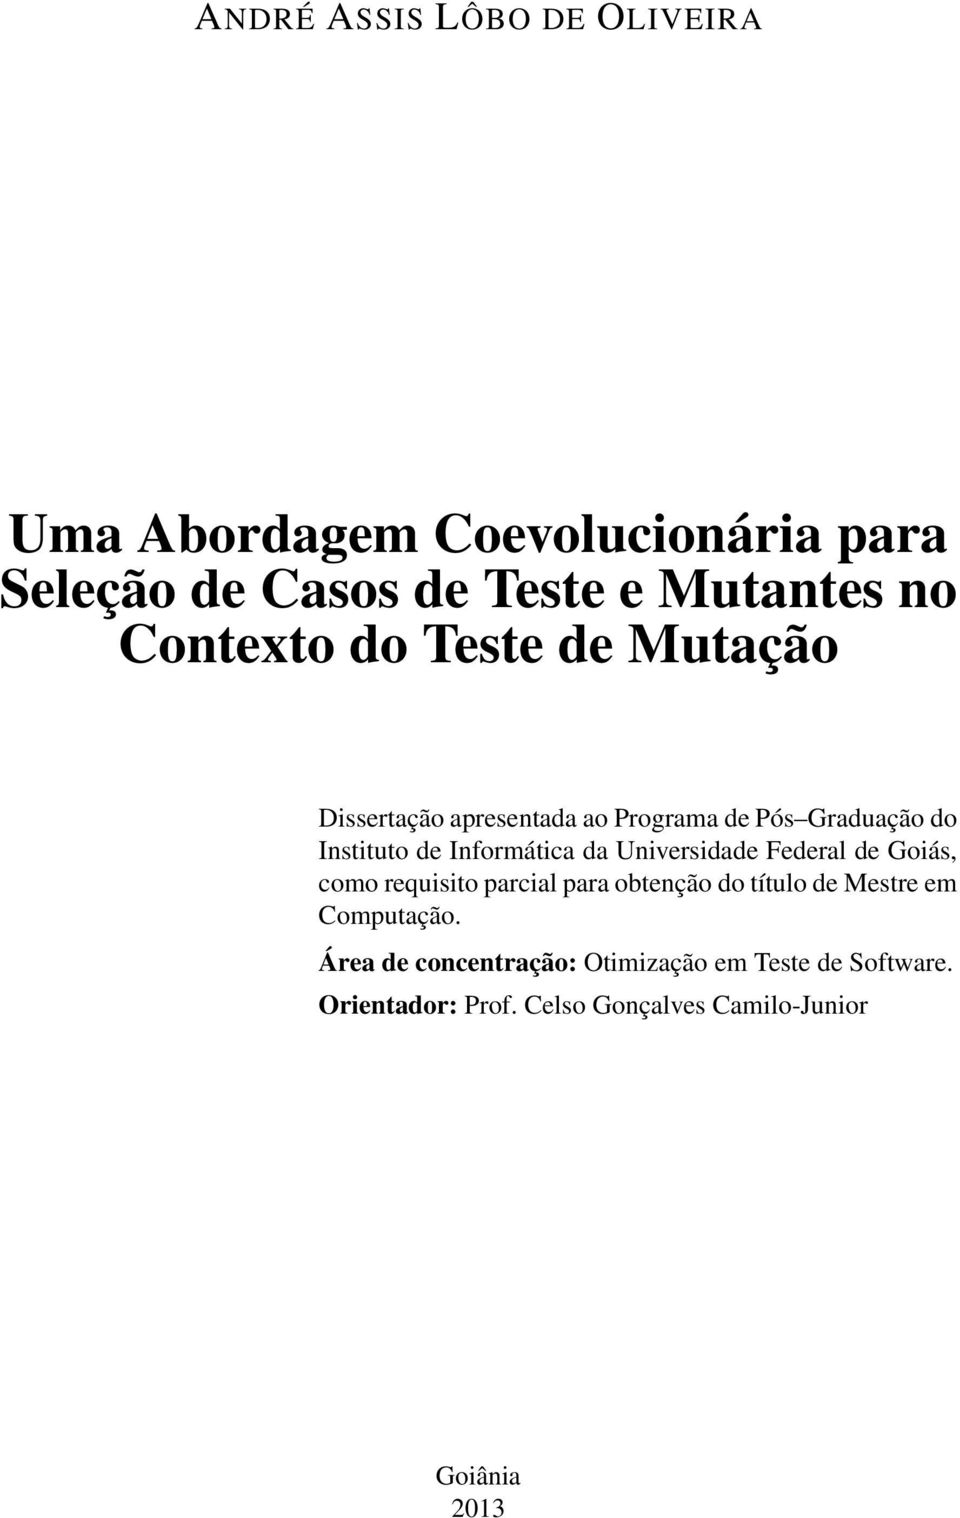 Informática da Universidade Federal de Goiás, como requisito parcial para obtenção do título de Mestre em